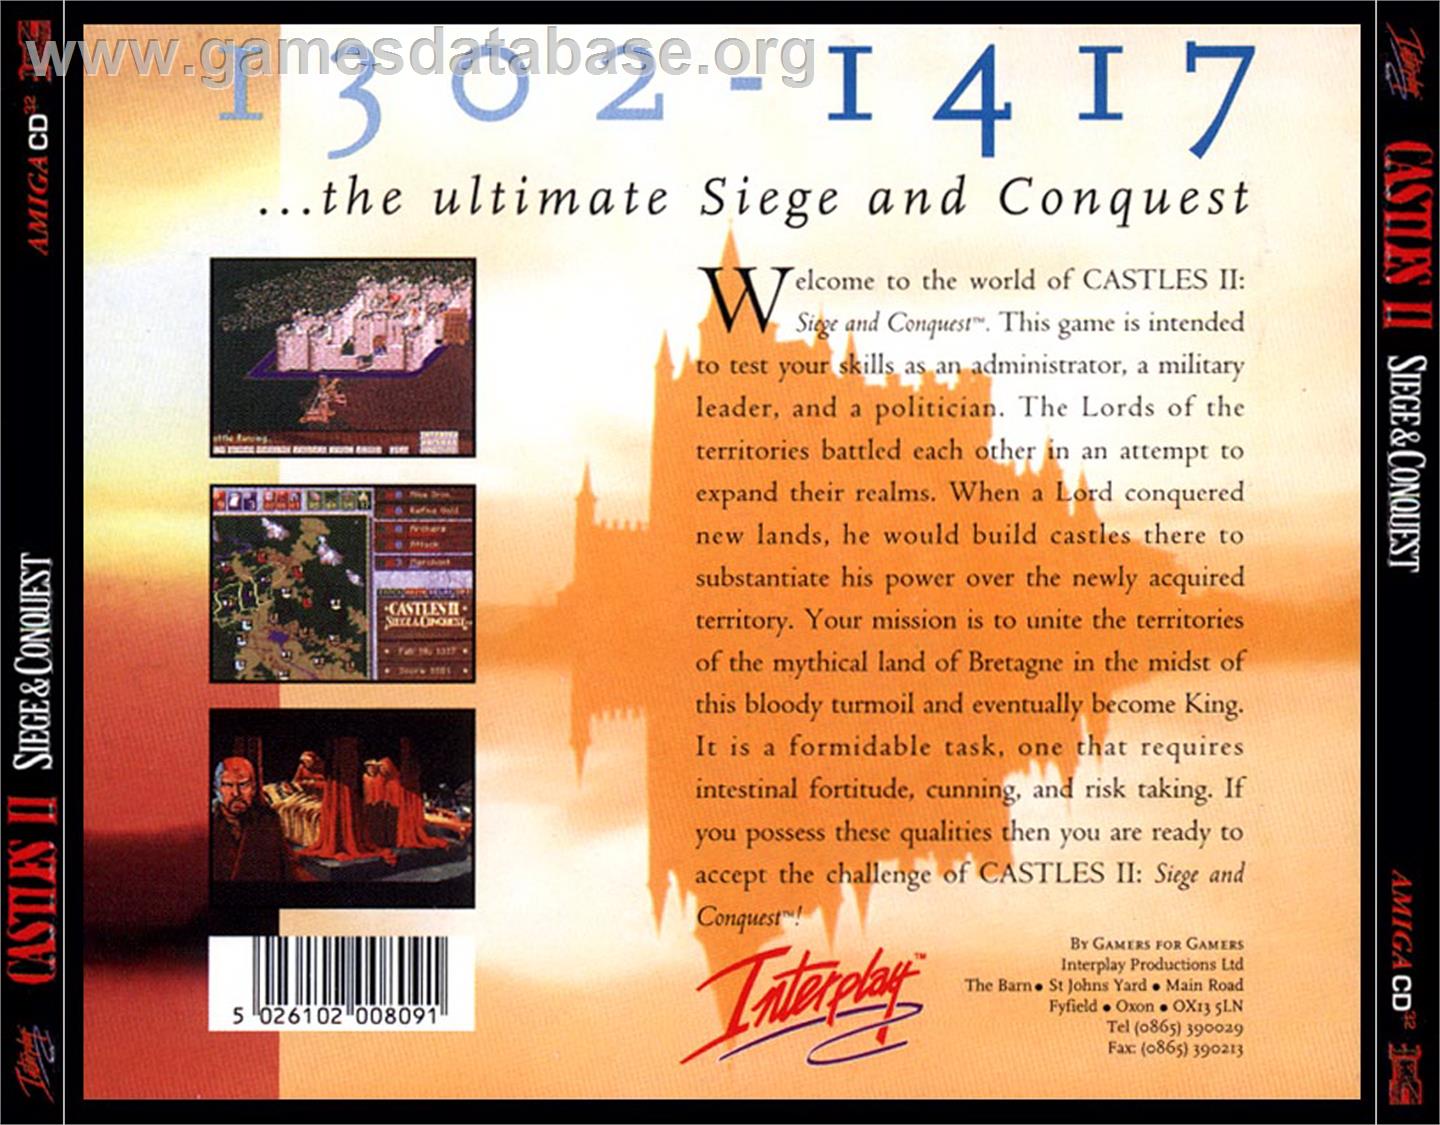 Castles 2: Siege & Conquest - Commodore Amiga CD32 - Artwork - Box Back